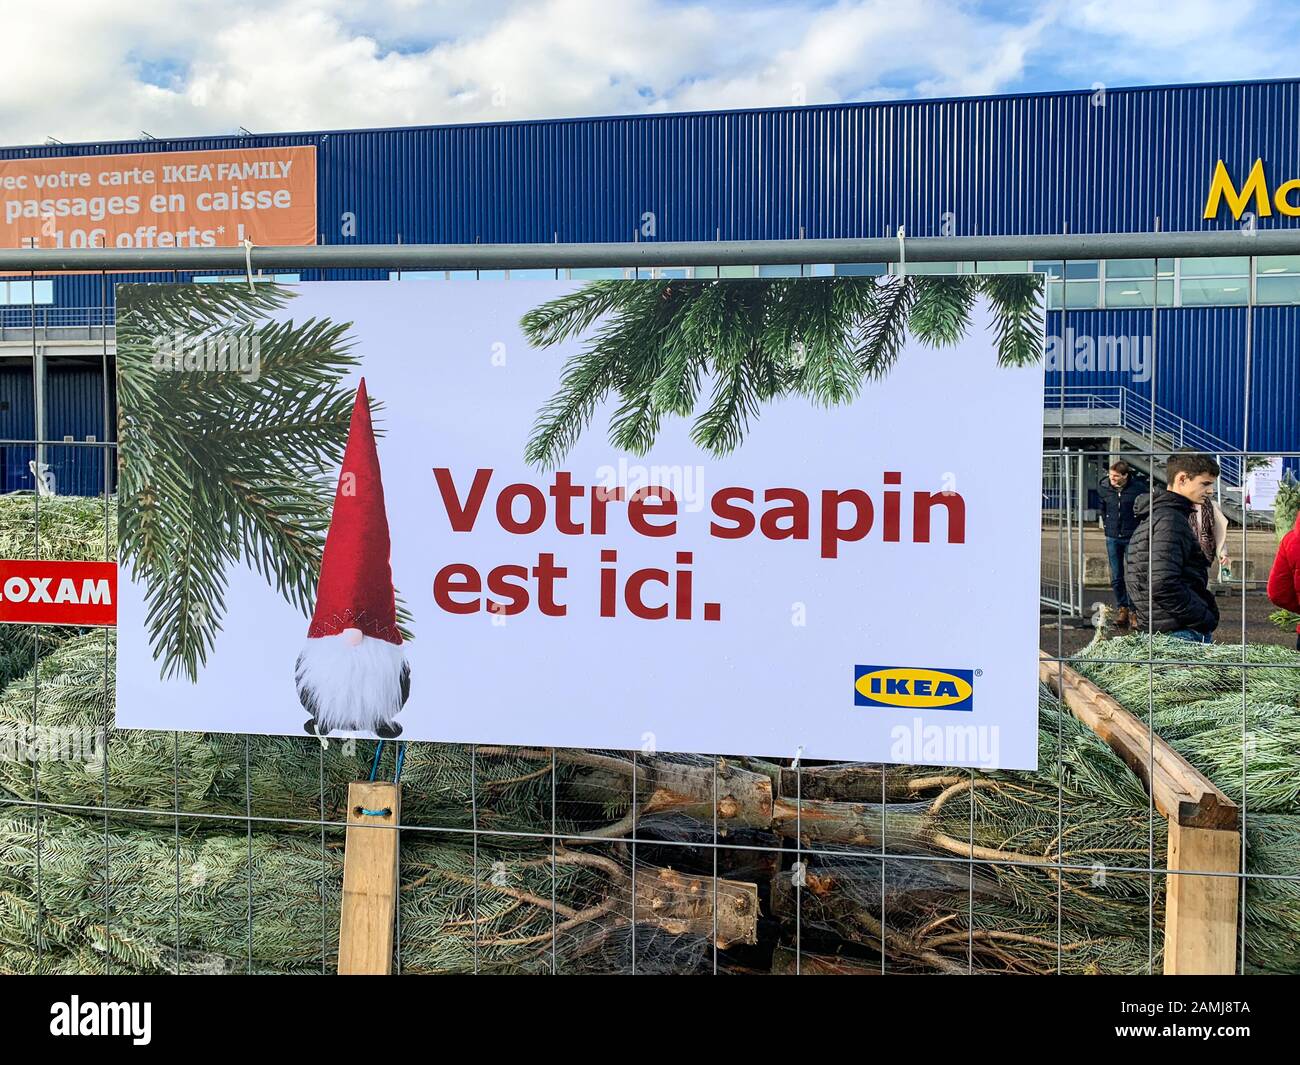 Recinto Albero Di Natale Ikea.Banner Ikea Immagini E Fotos Stock Alamy